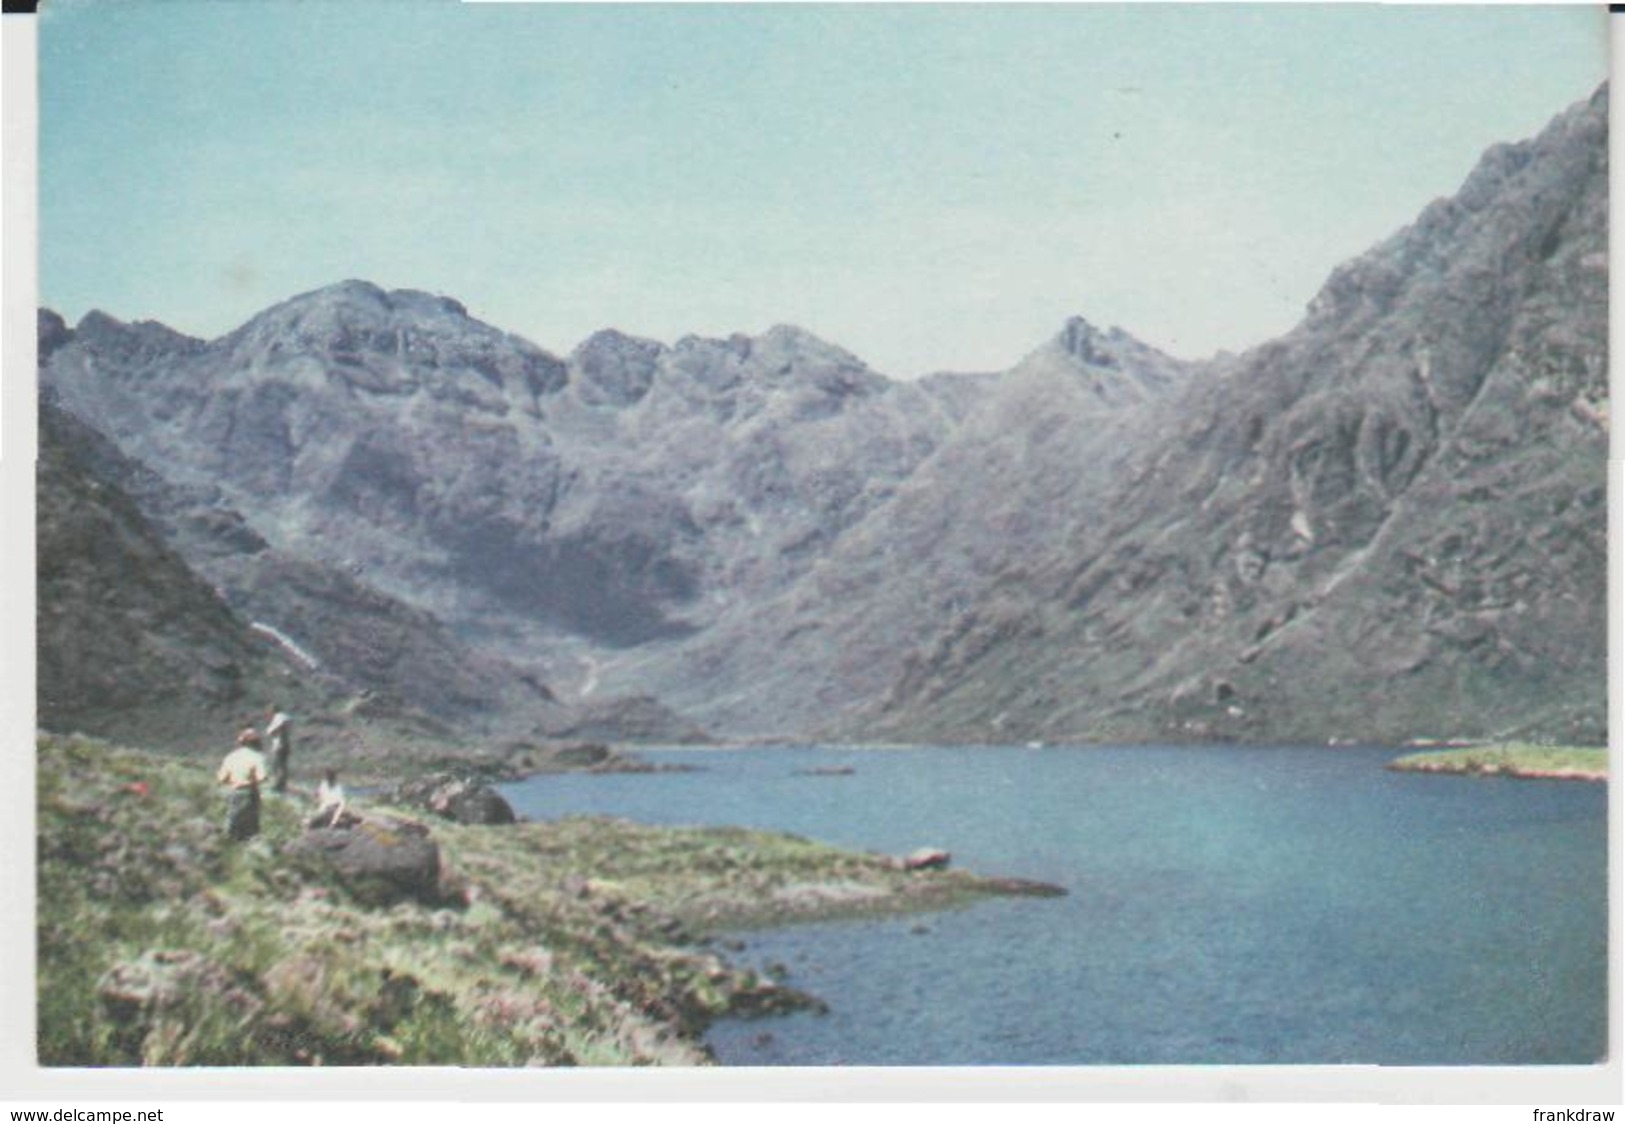 Postcard - Loch Coruisk, Isle Of Skye - Card No..3825 - Unused Very Good - Sin Clasificación